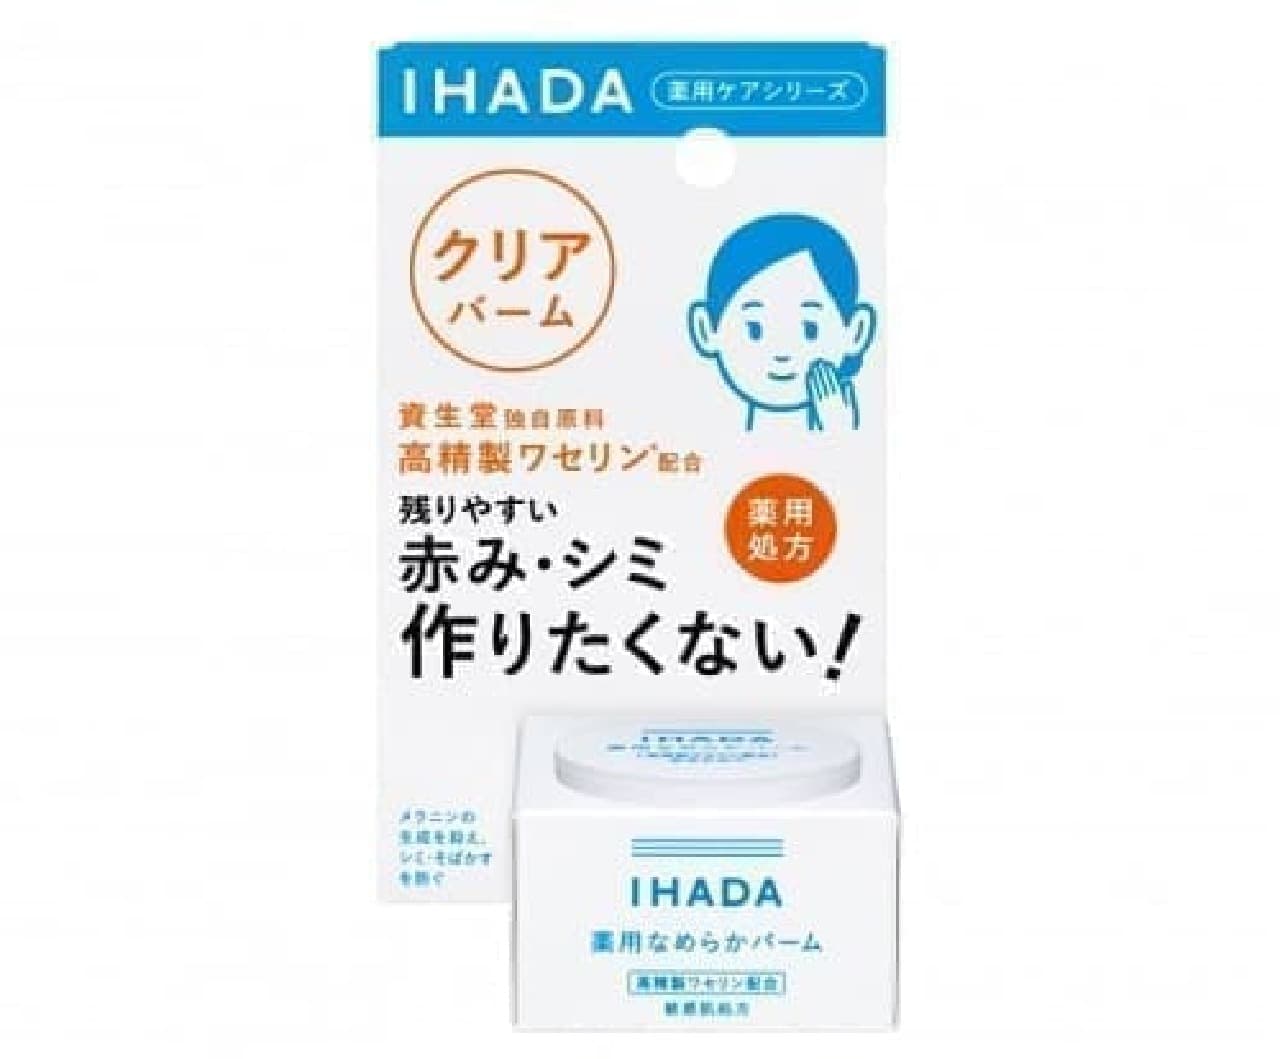 Ihada Medicinal Clear Balm